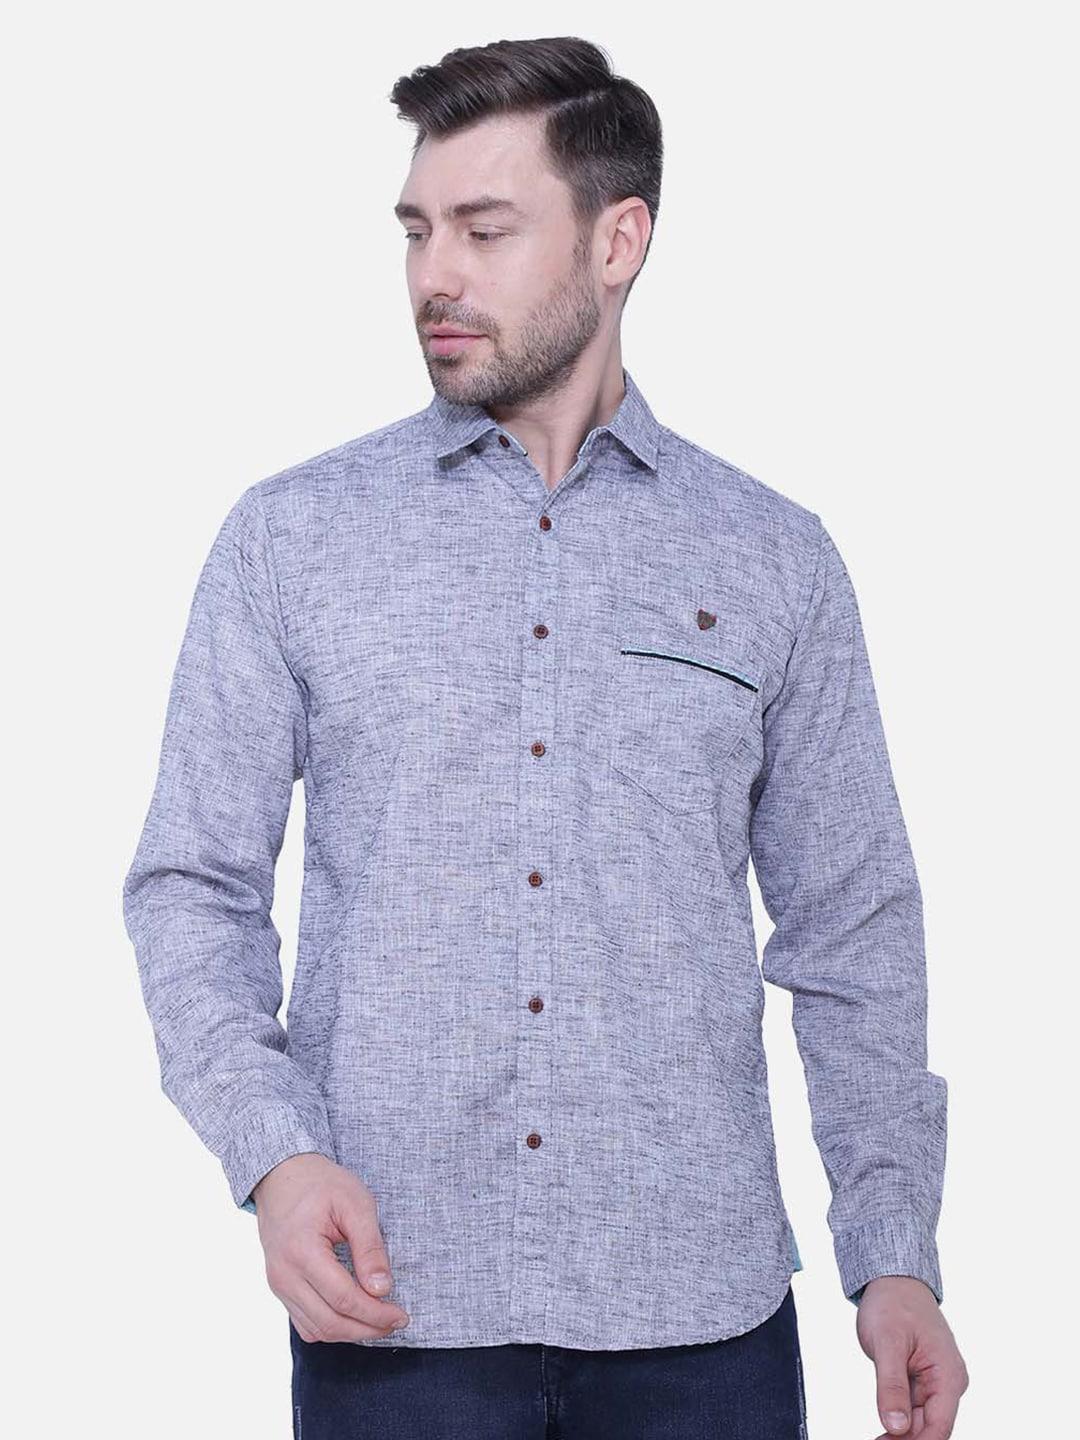 kuons avenue men smart slim fit cotton linen casual shirt